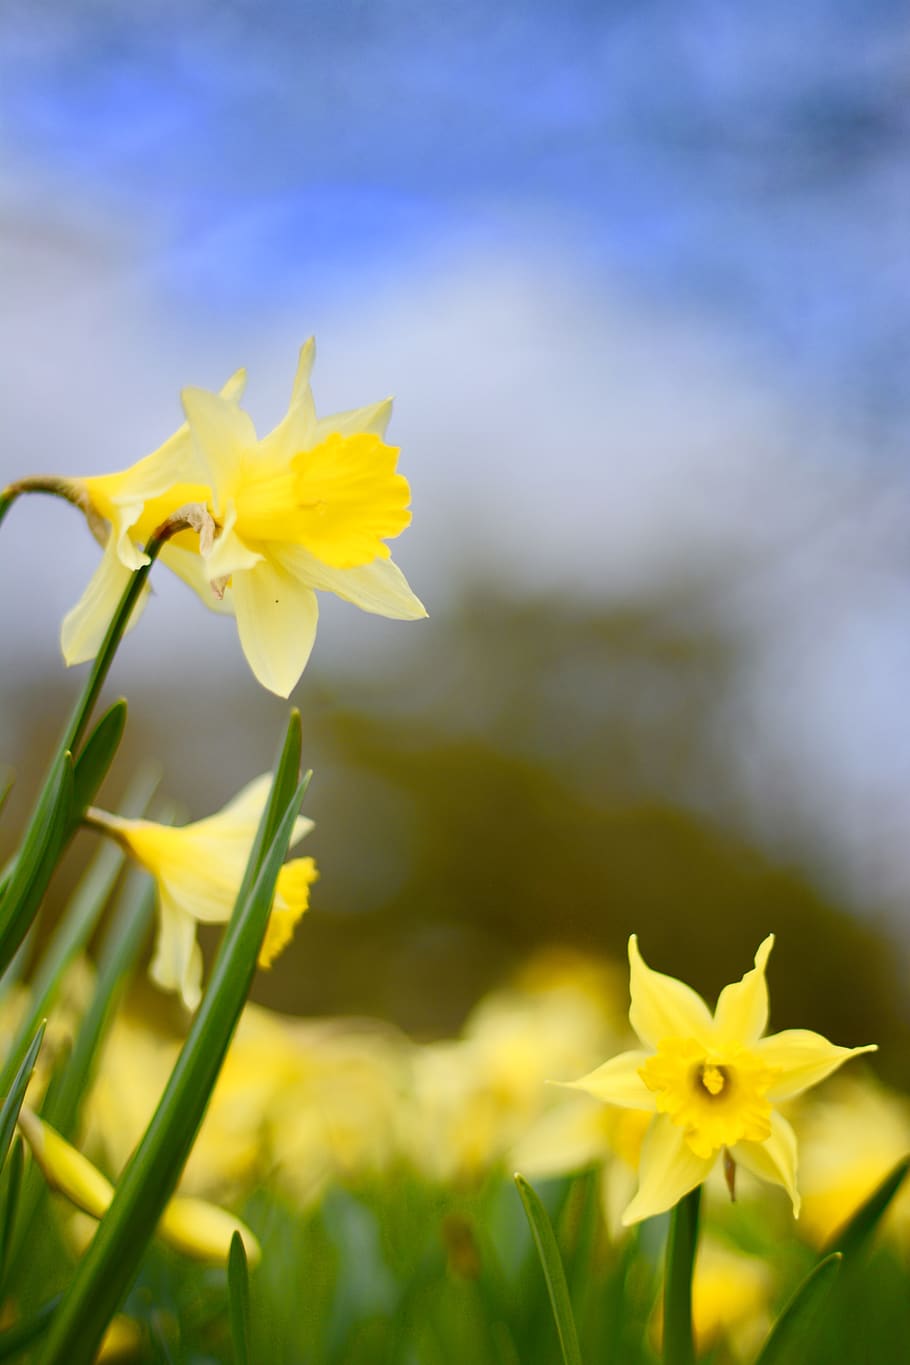 kew gardens, united kingdom, richmond, daffodils, flowers, spring